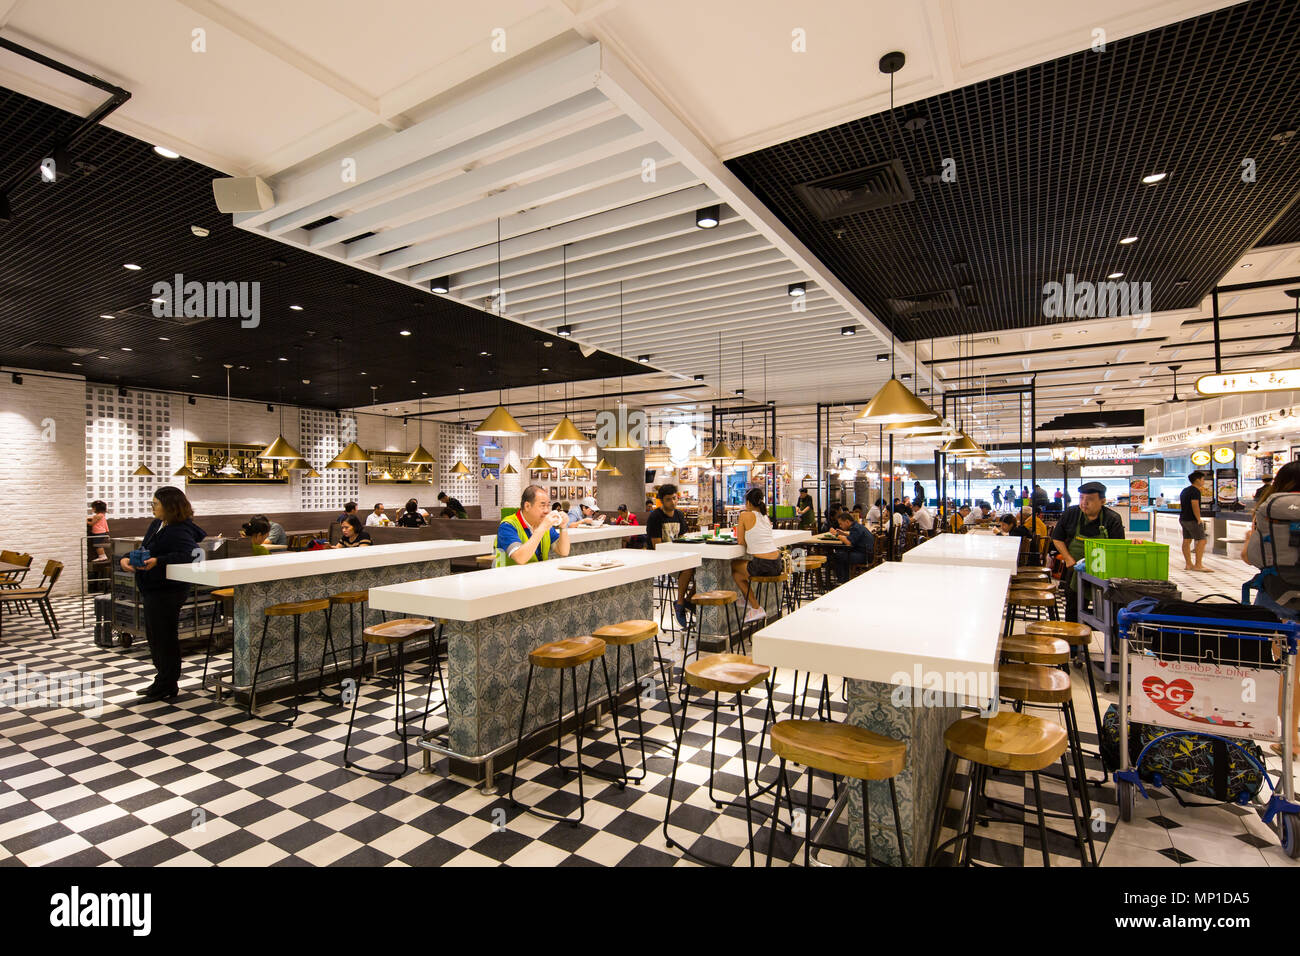 Inneneinrichtung des Food Emporium oder allgemein bekannt als Food Court oder Essbereich am Flughafen Singapur Changi Terminal 4. Stockfoto